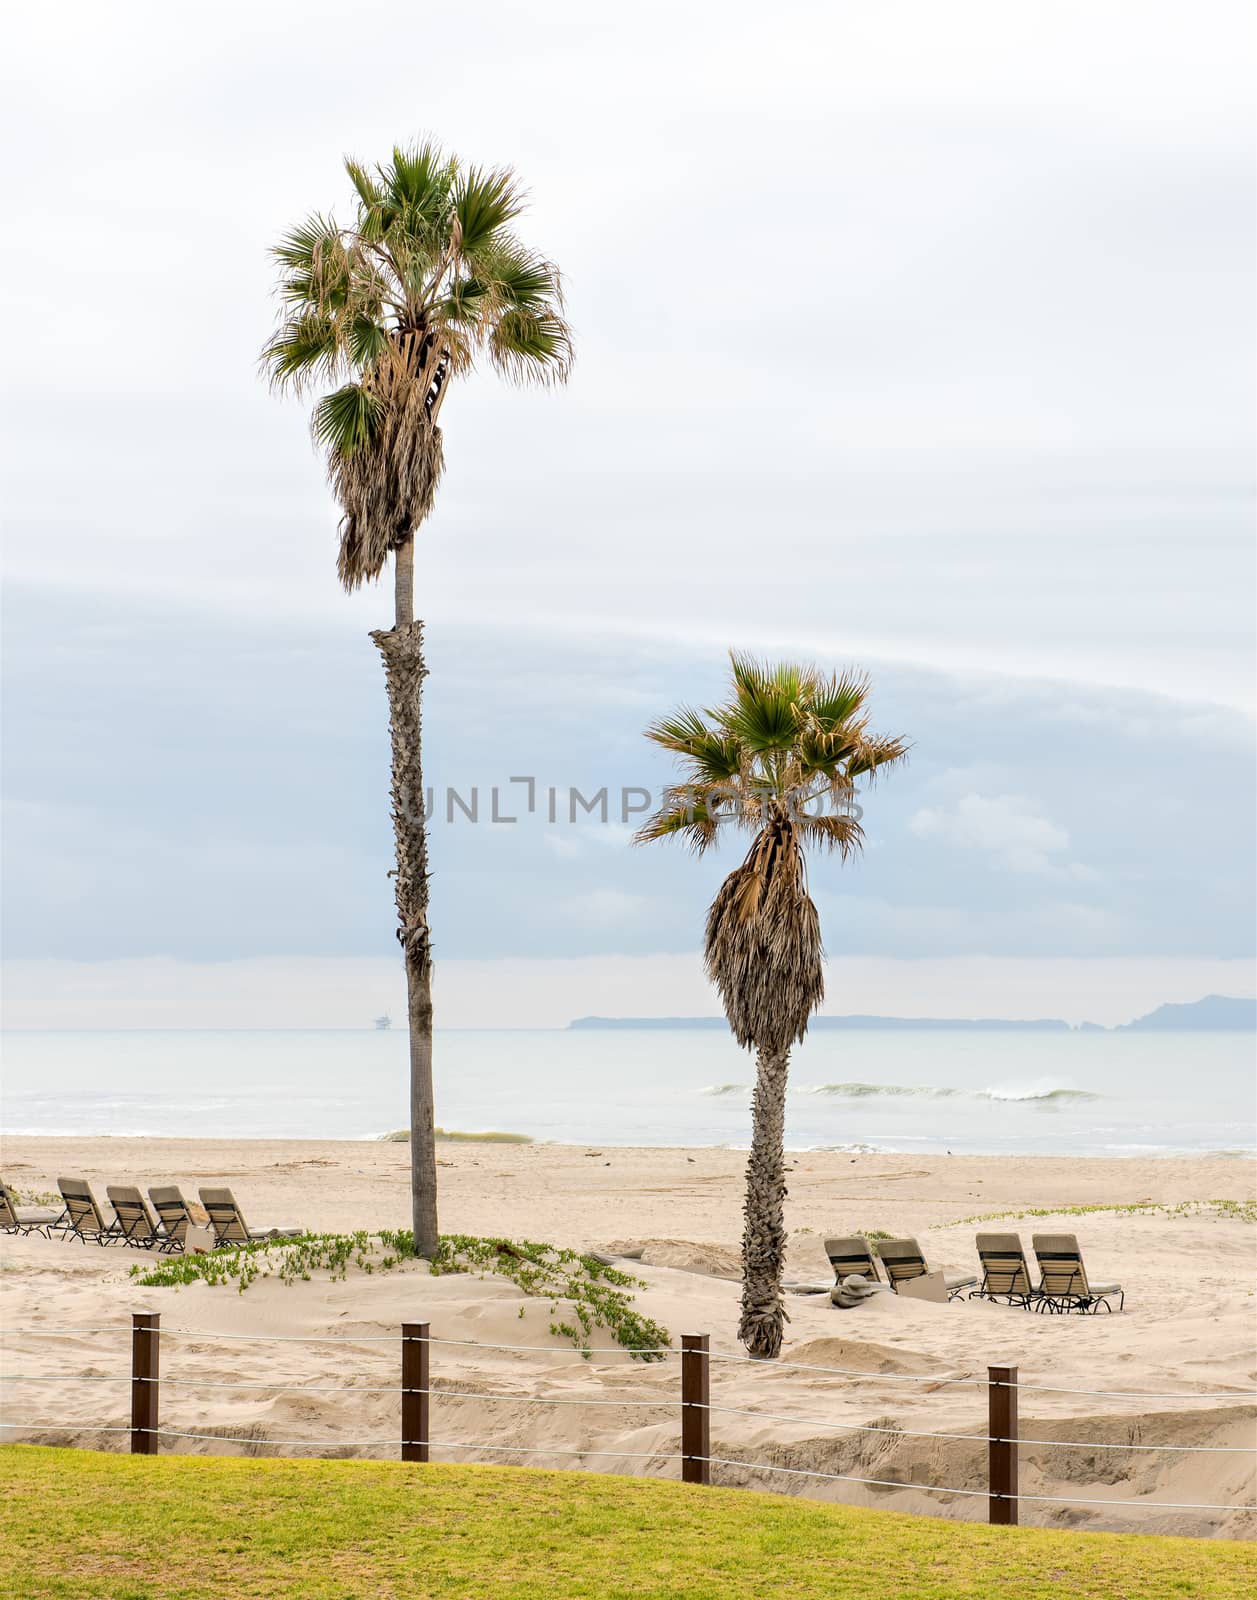 Palm trees at a beach in California, Pacific Ocean